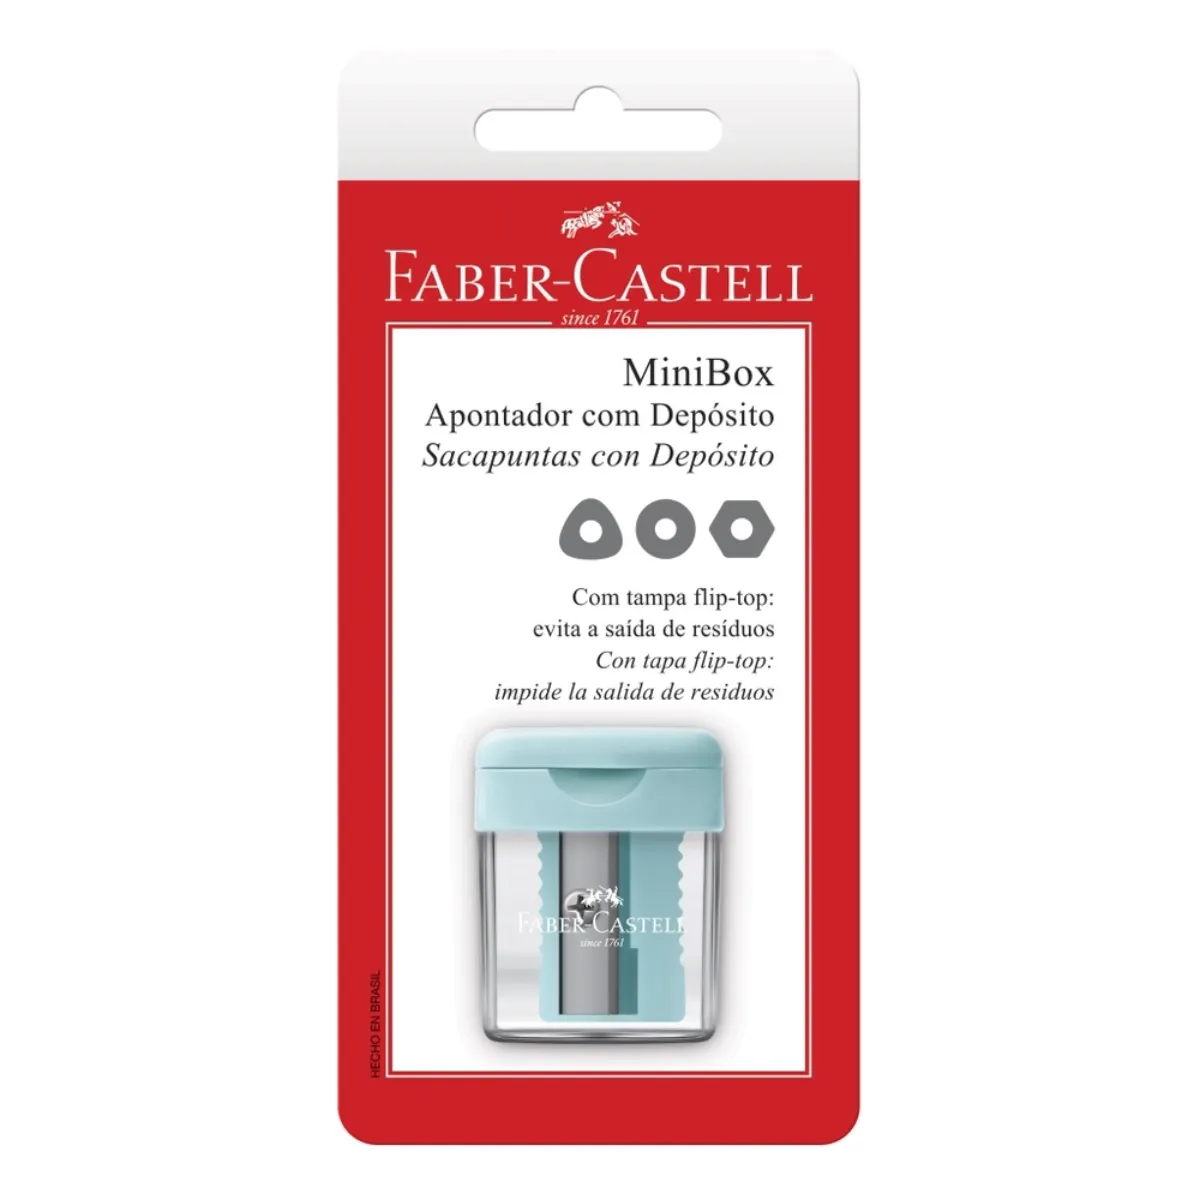 Apontador Faber Castell com Deposito Minibox image number 0